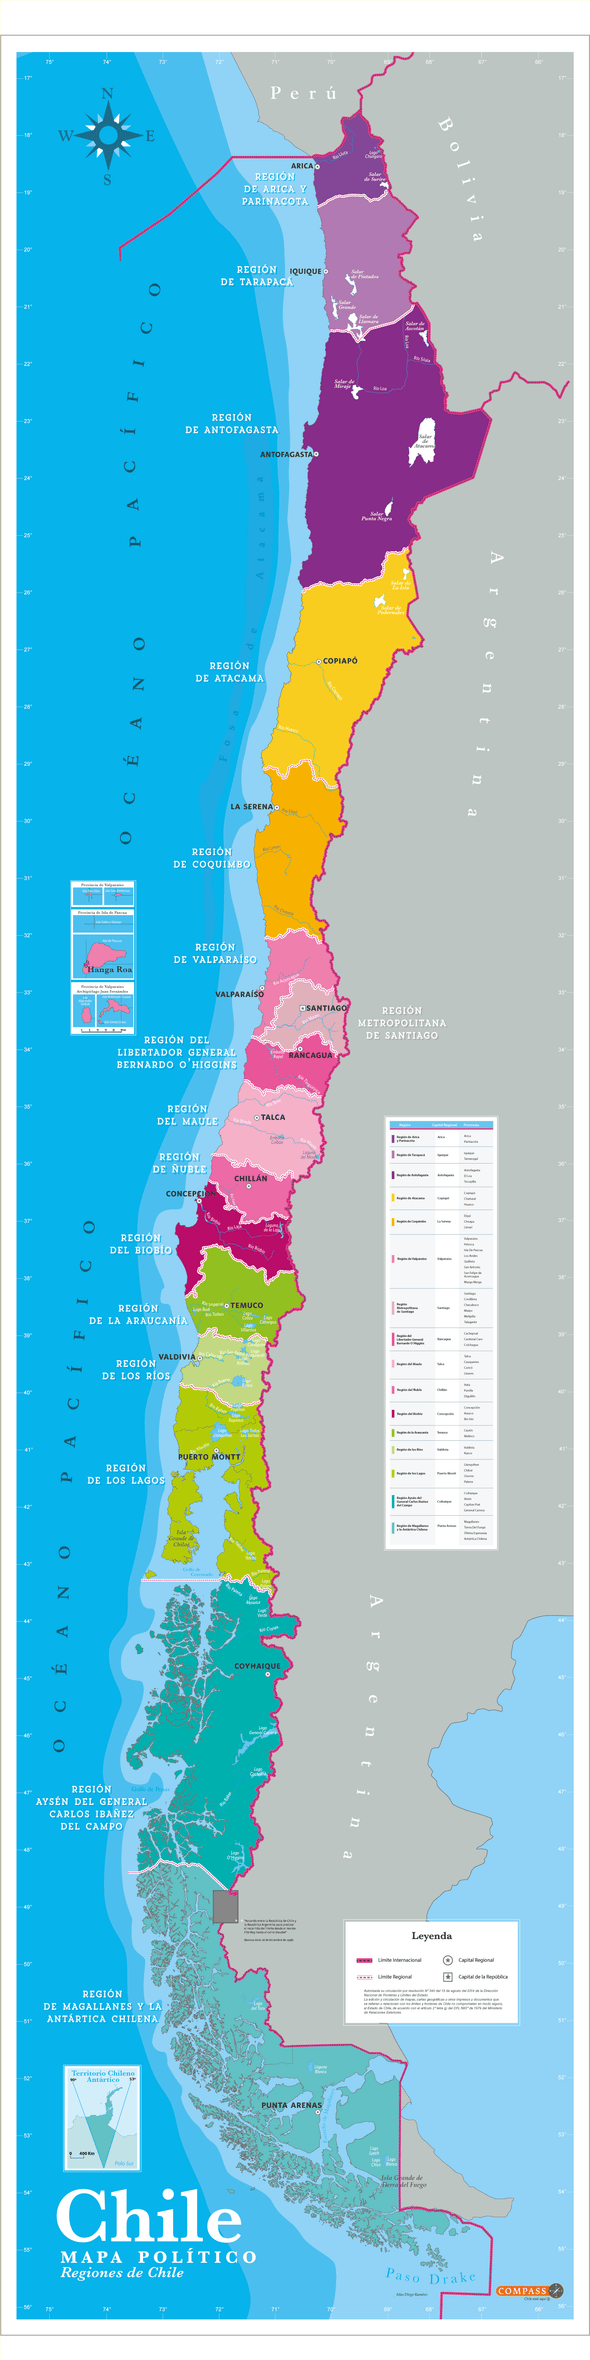 Mapa político de Chile Gran Formato (Salas de clases)